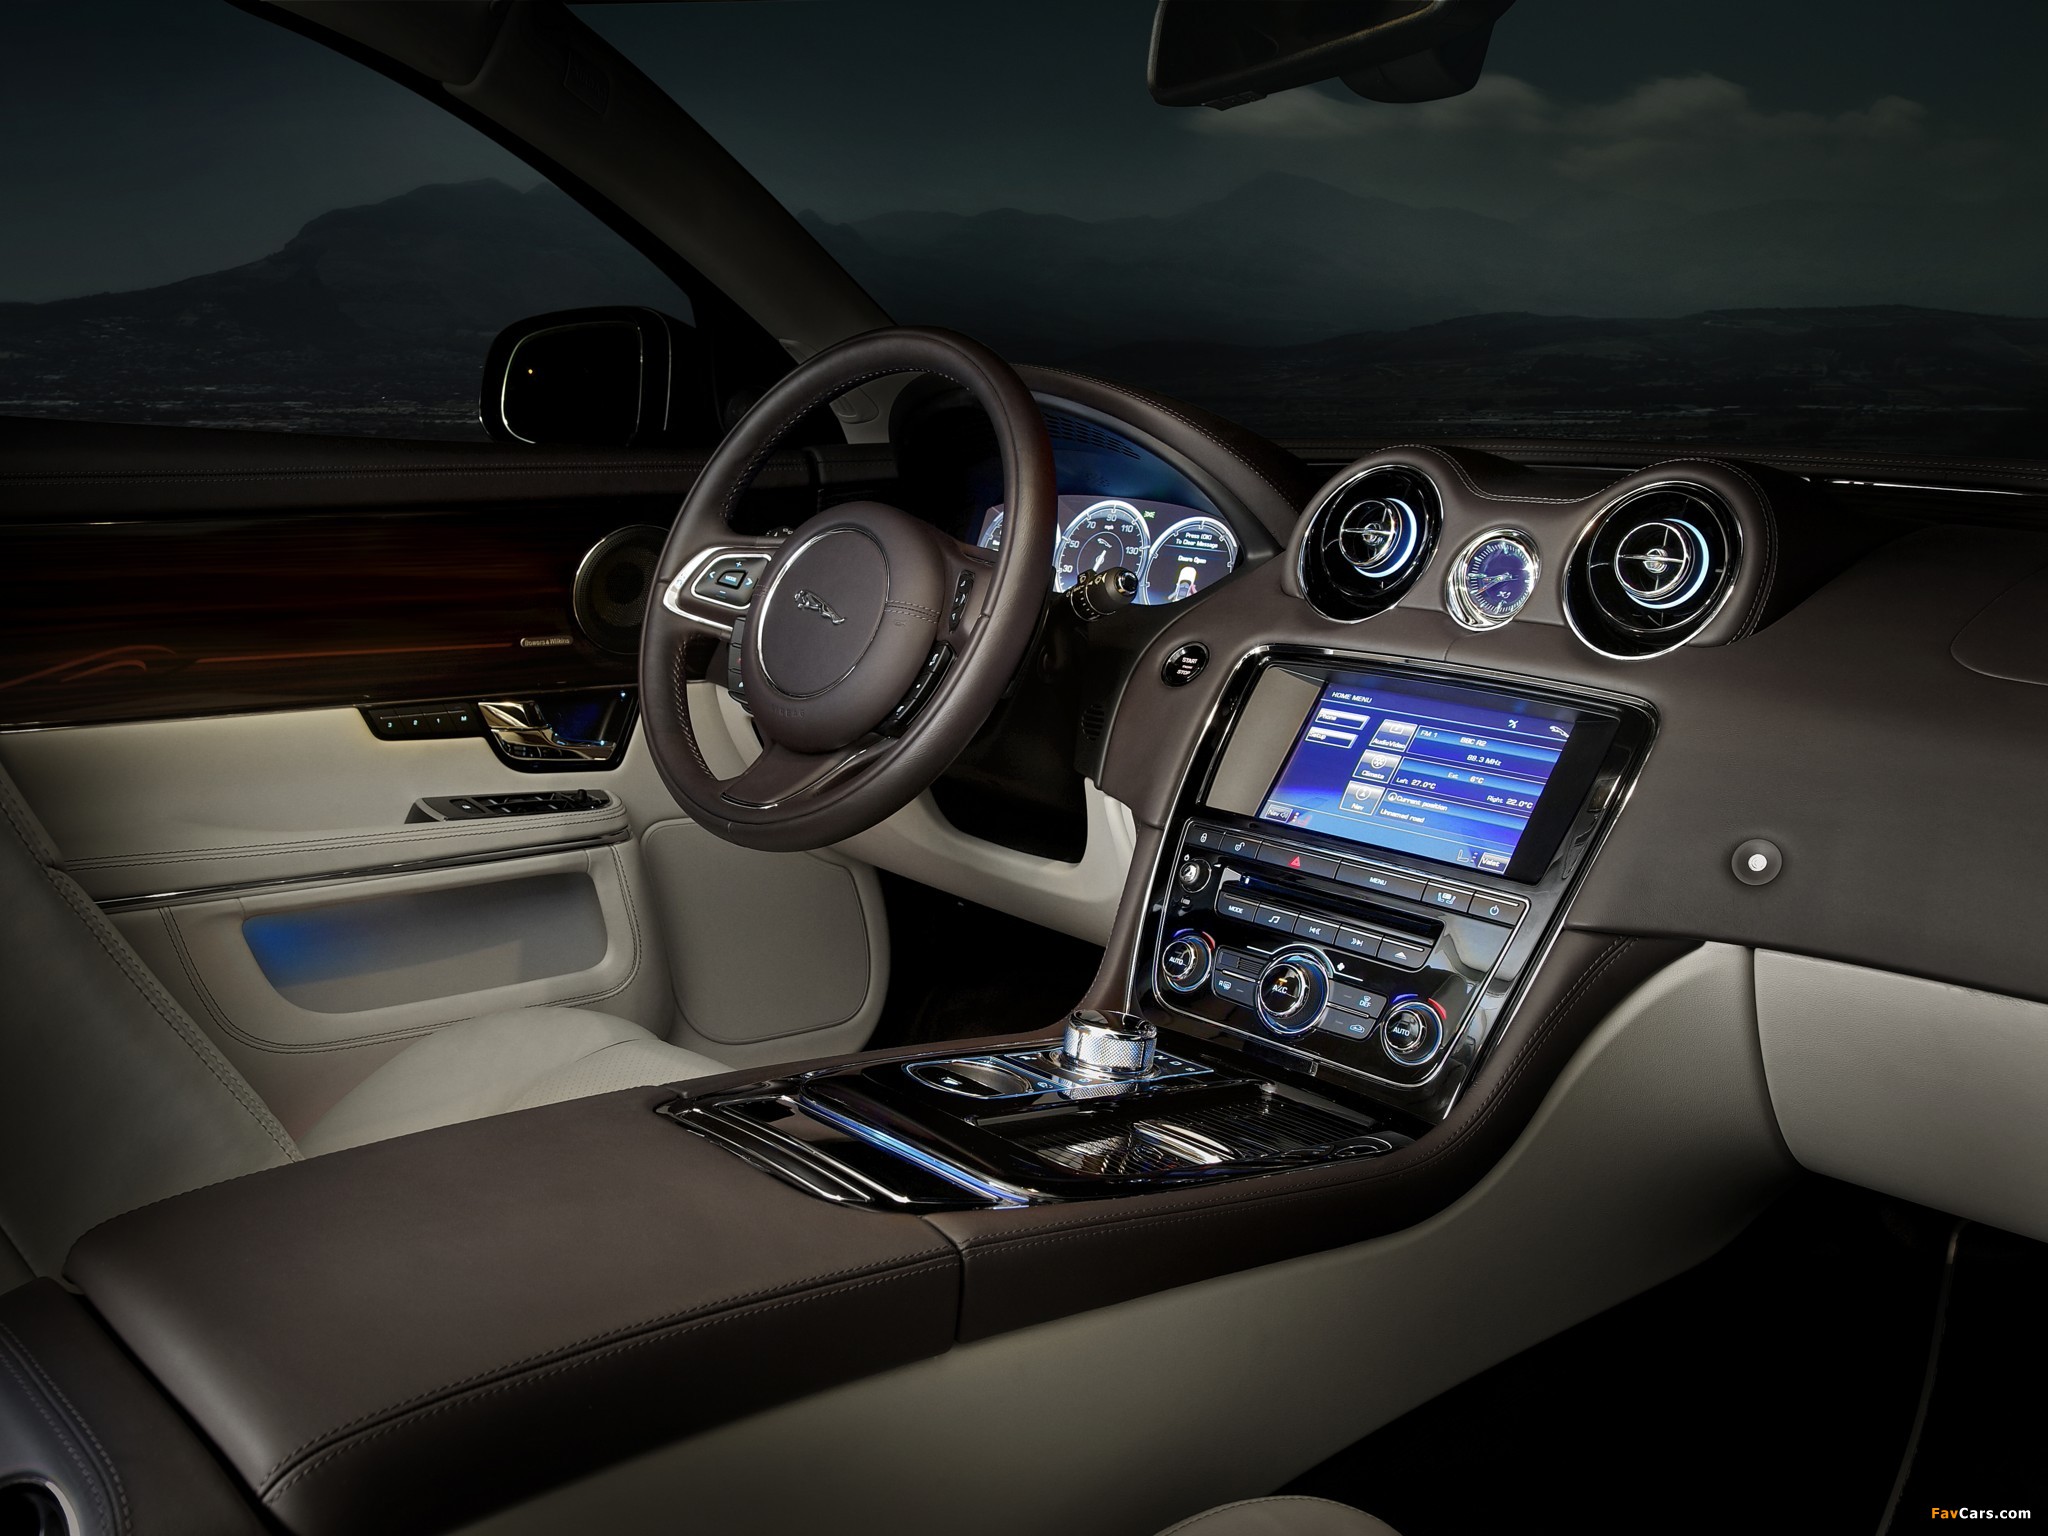 Cars inside. Ягуар XJ 2012. Jaguar XJ 2014 салон. Jaguar XJ Interior. Jaguar XJ 2012 салон.